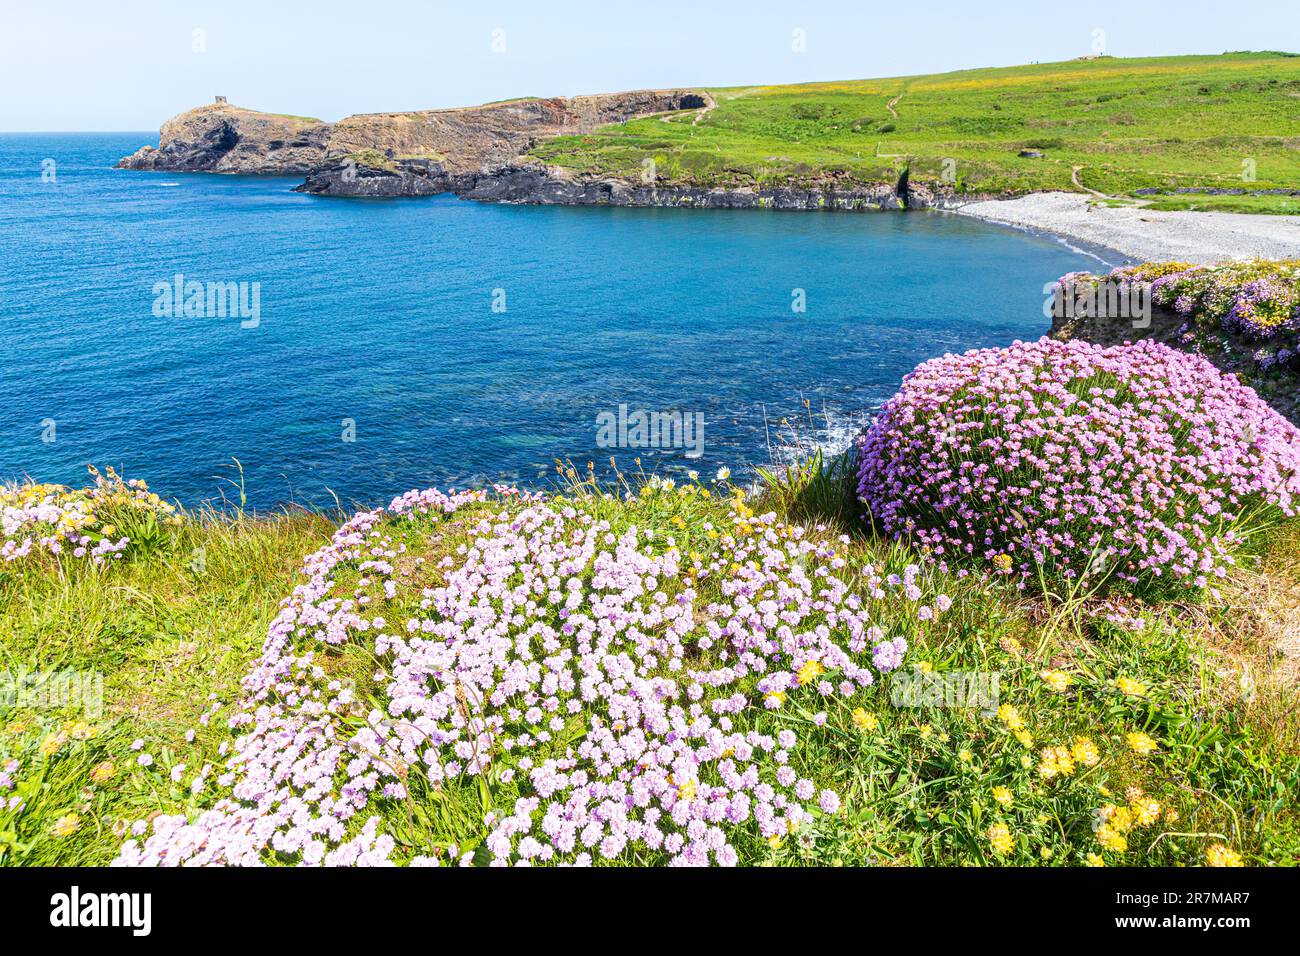 Des roses de mer (thrift) fleurissent sur les falaises d'Abereiddy Bay, sur la péninsule de St David, Pembrokeshire, pays de Galles, Royaume-Uni. Banque D'Images